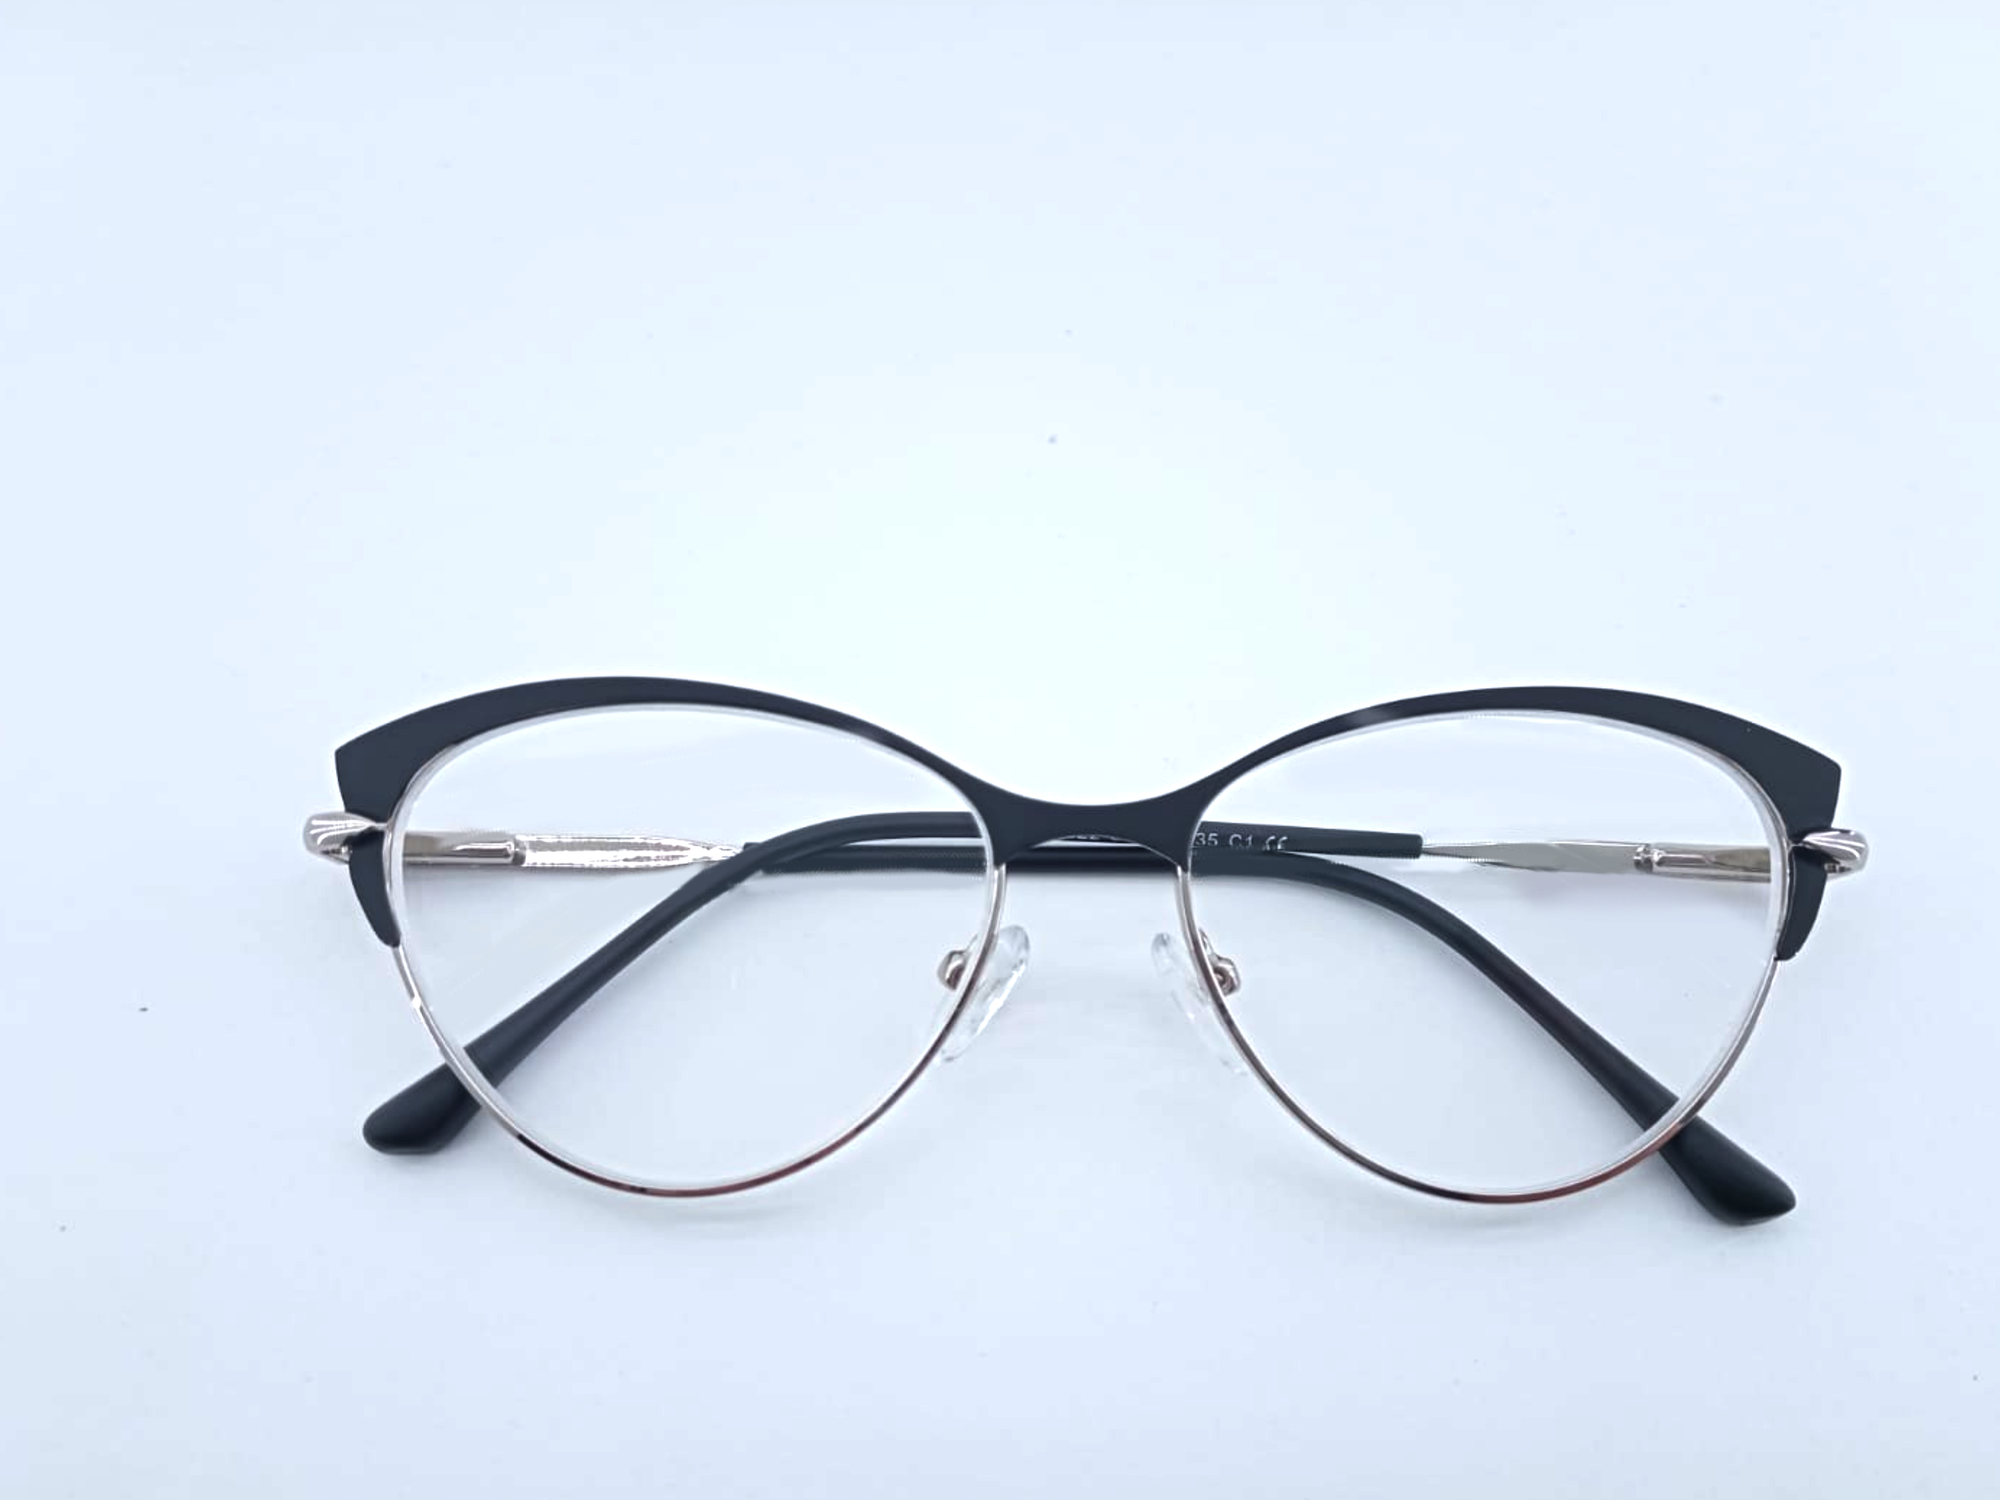 Готовые очки для зрения с межцентровым расстоянием 58-60 мм и диоптриями +2.5